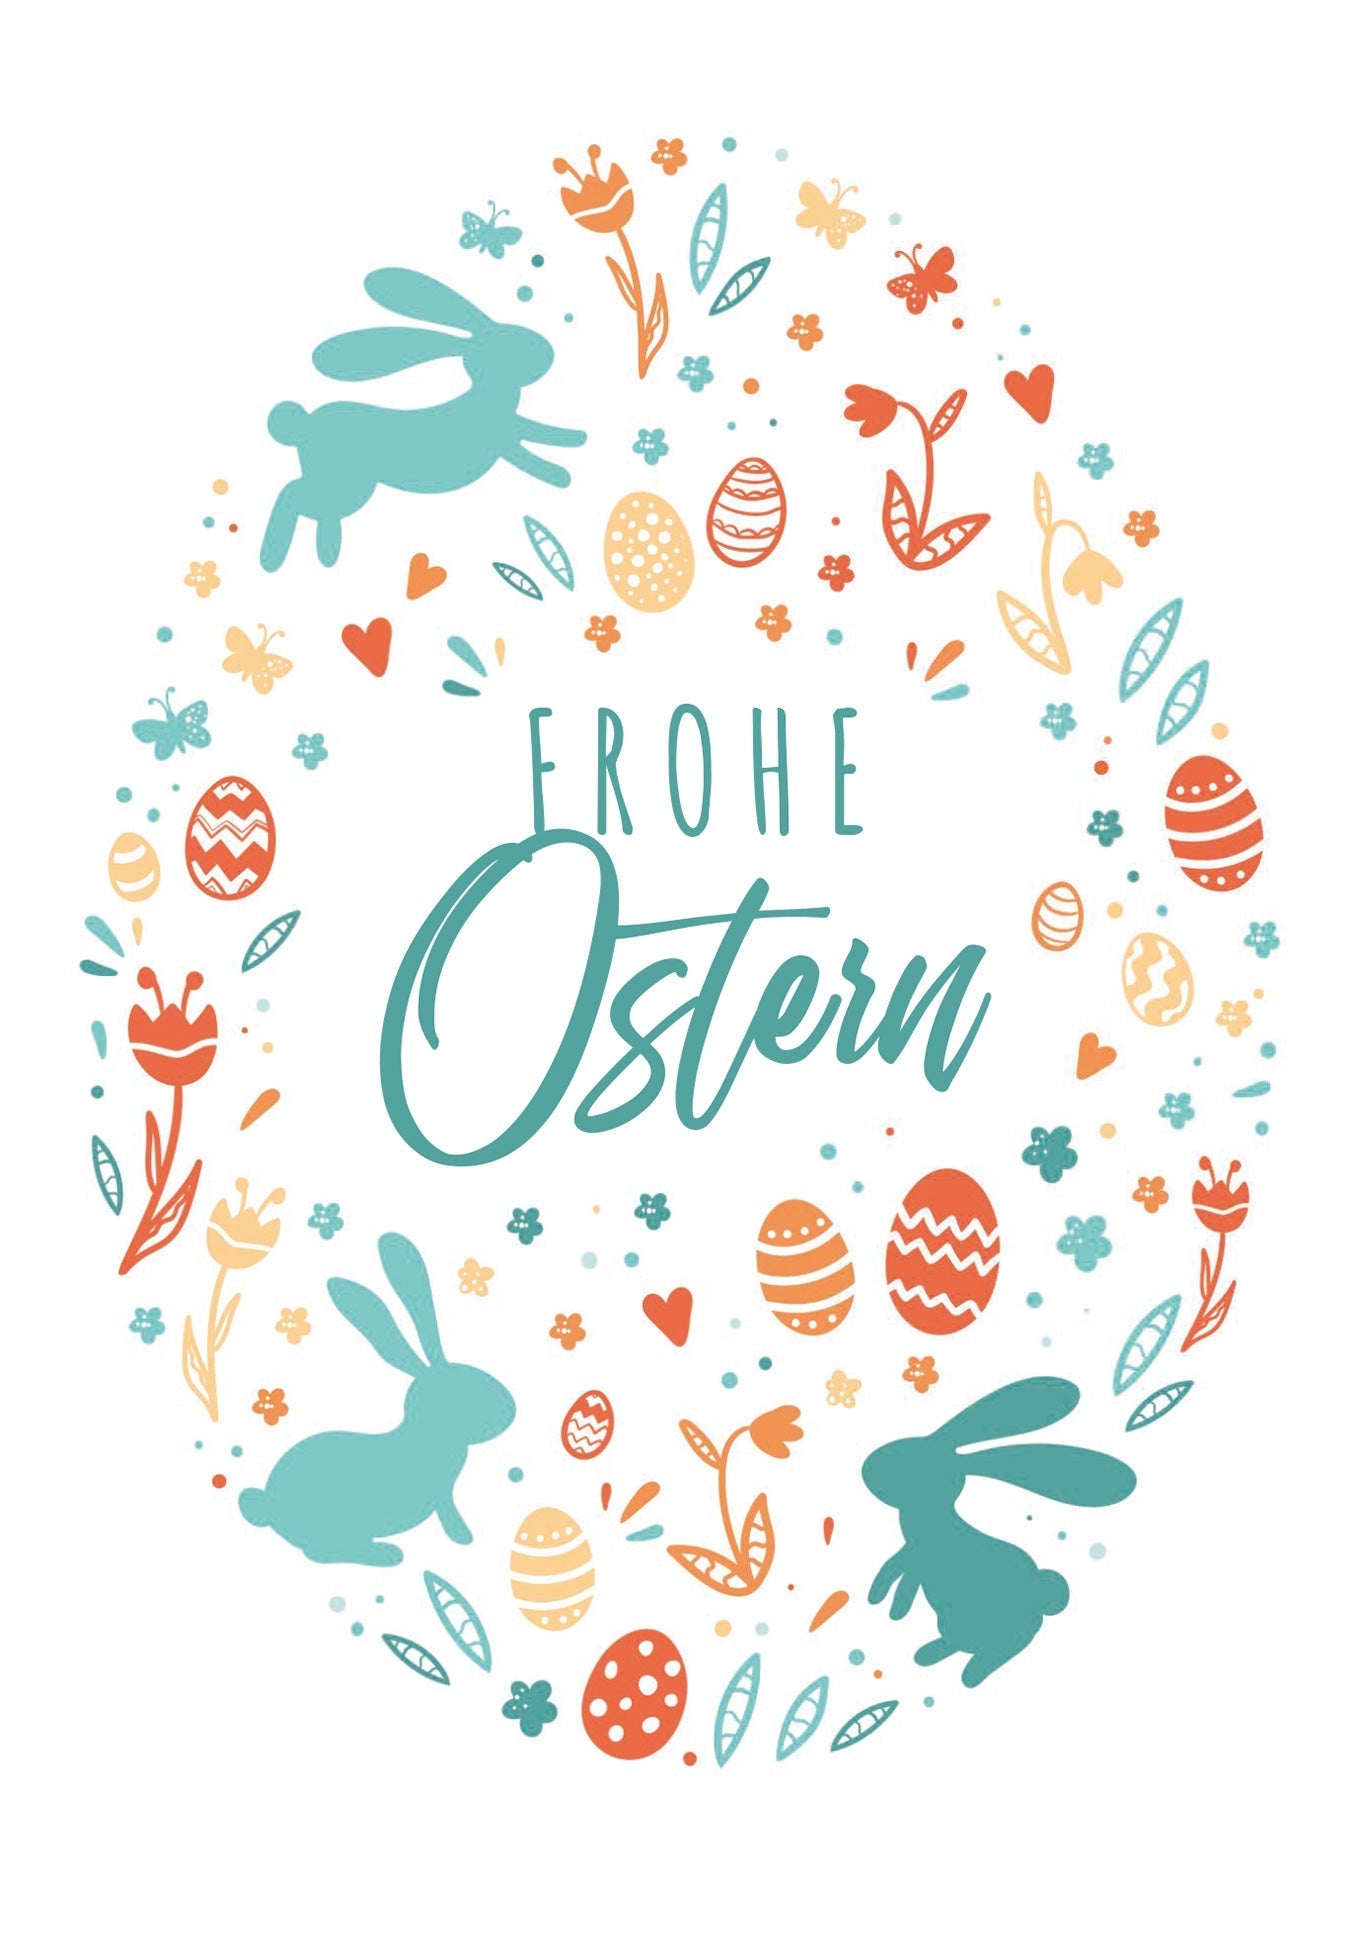 Frohe Ostern - Ei Bunt (Gutscheinwert)